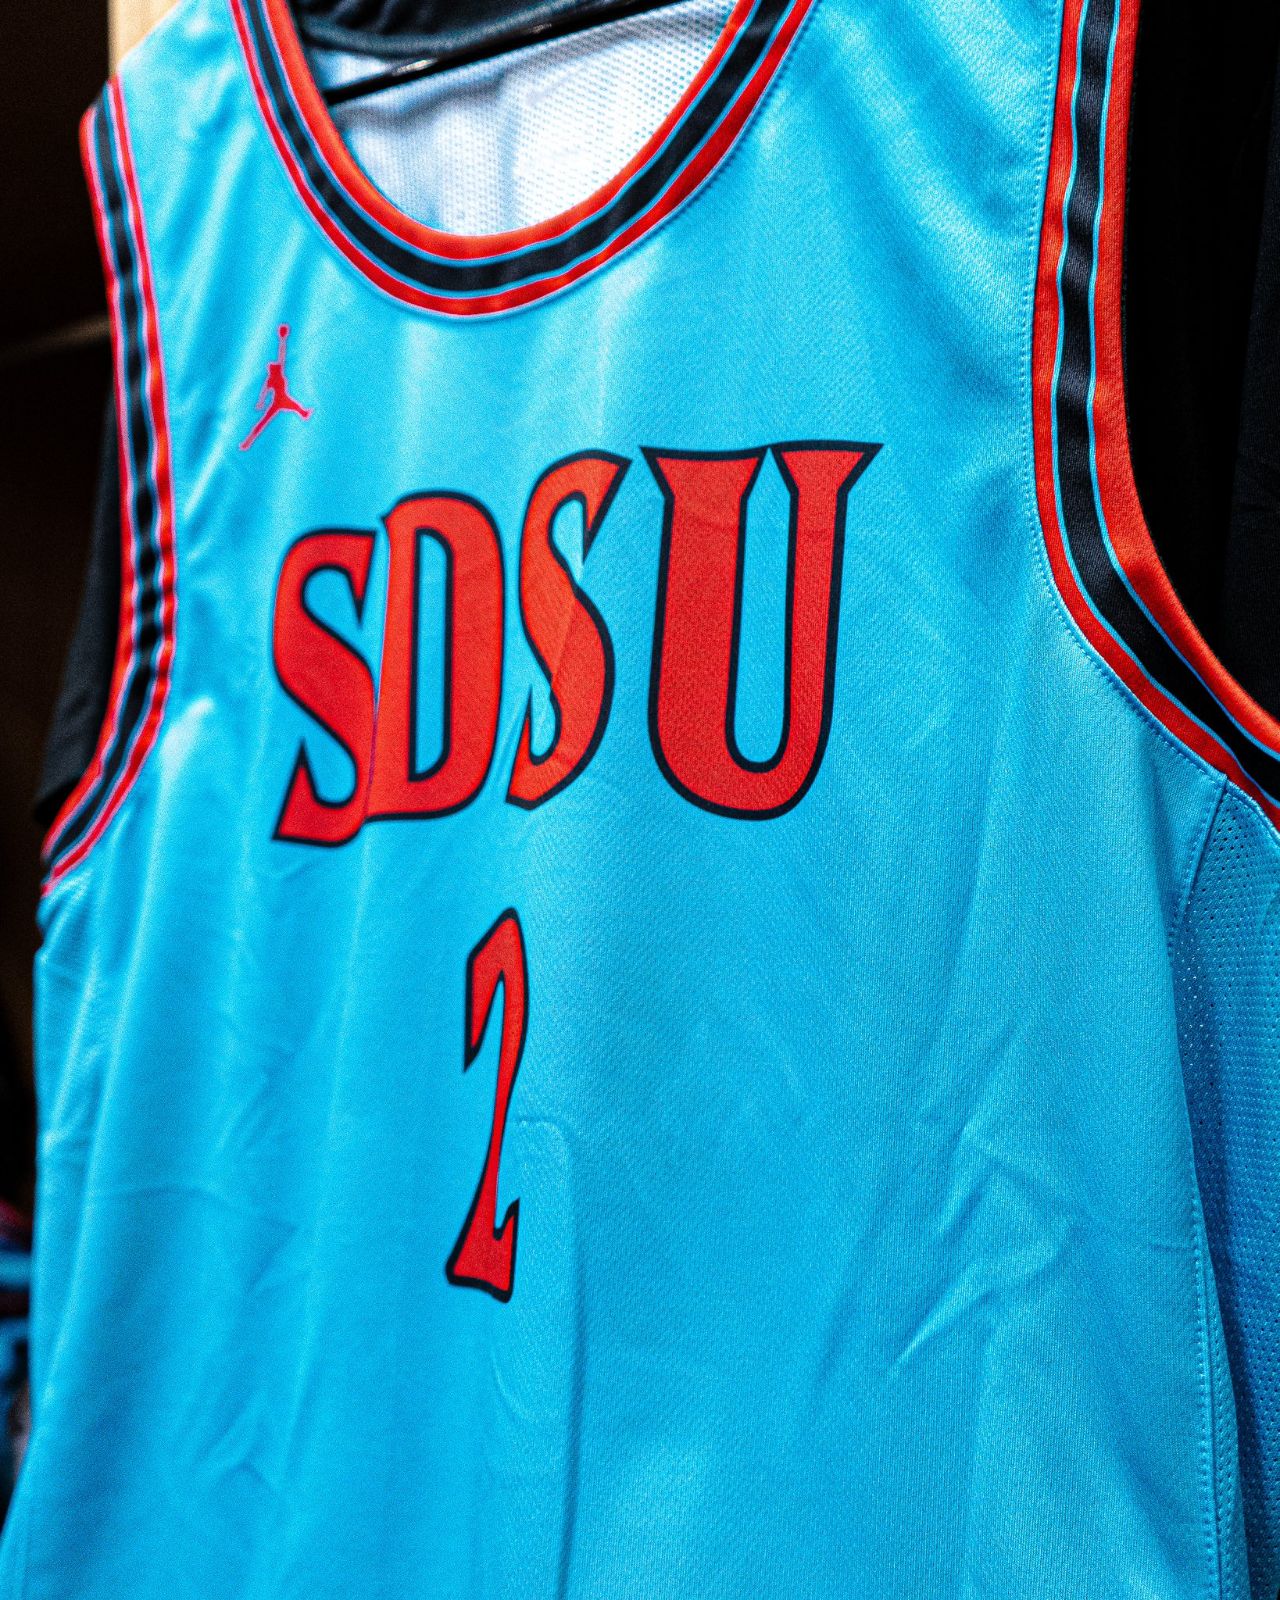 SDSU Men's Hoops to Wear Nike N7 Uniforms on Nov. 27